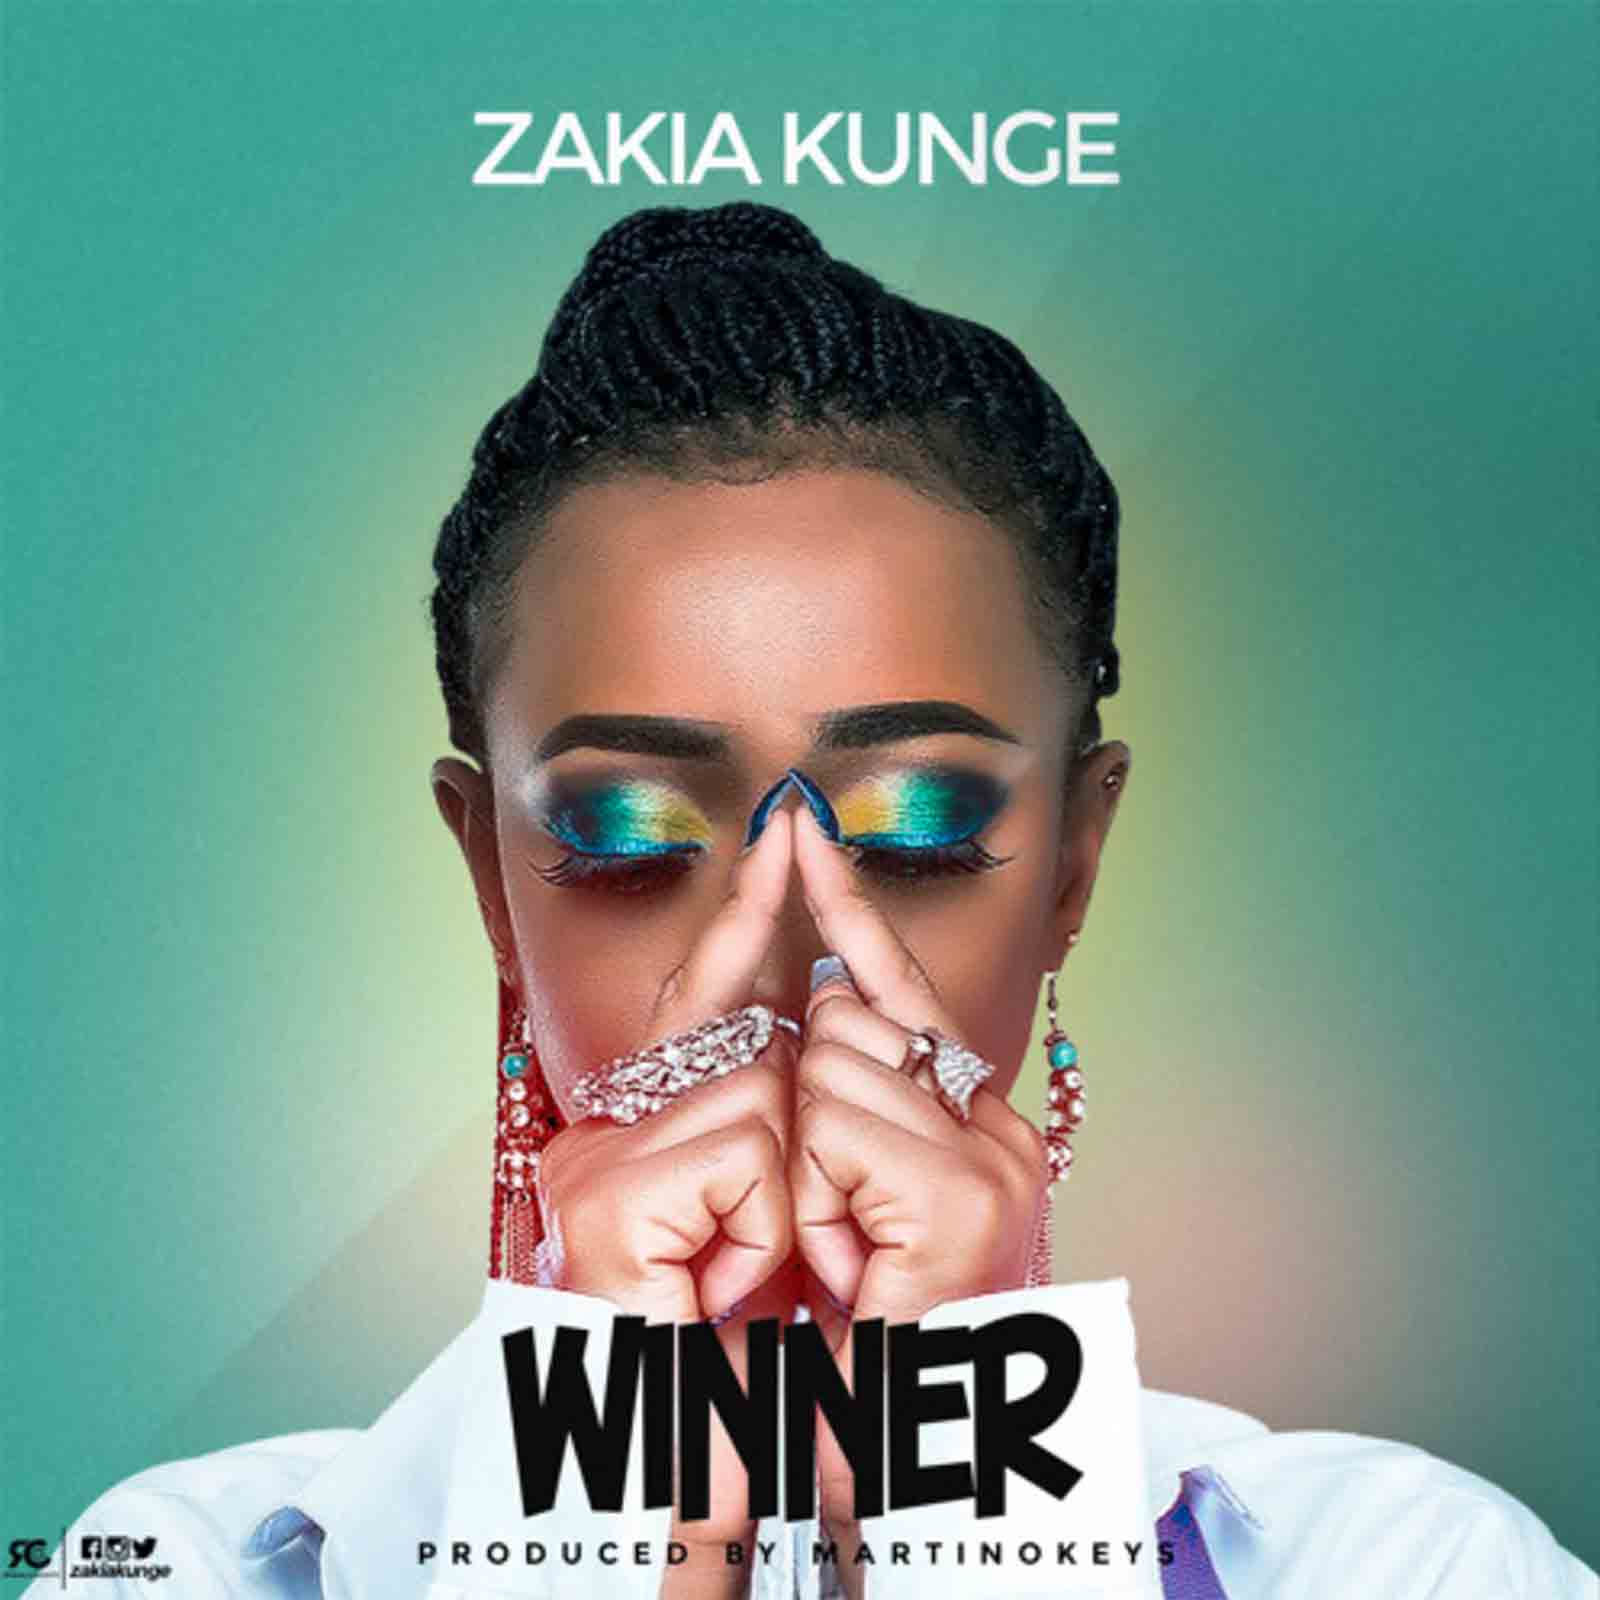 Winner by Zakia Kunge